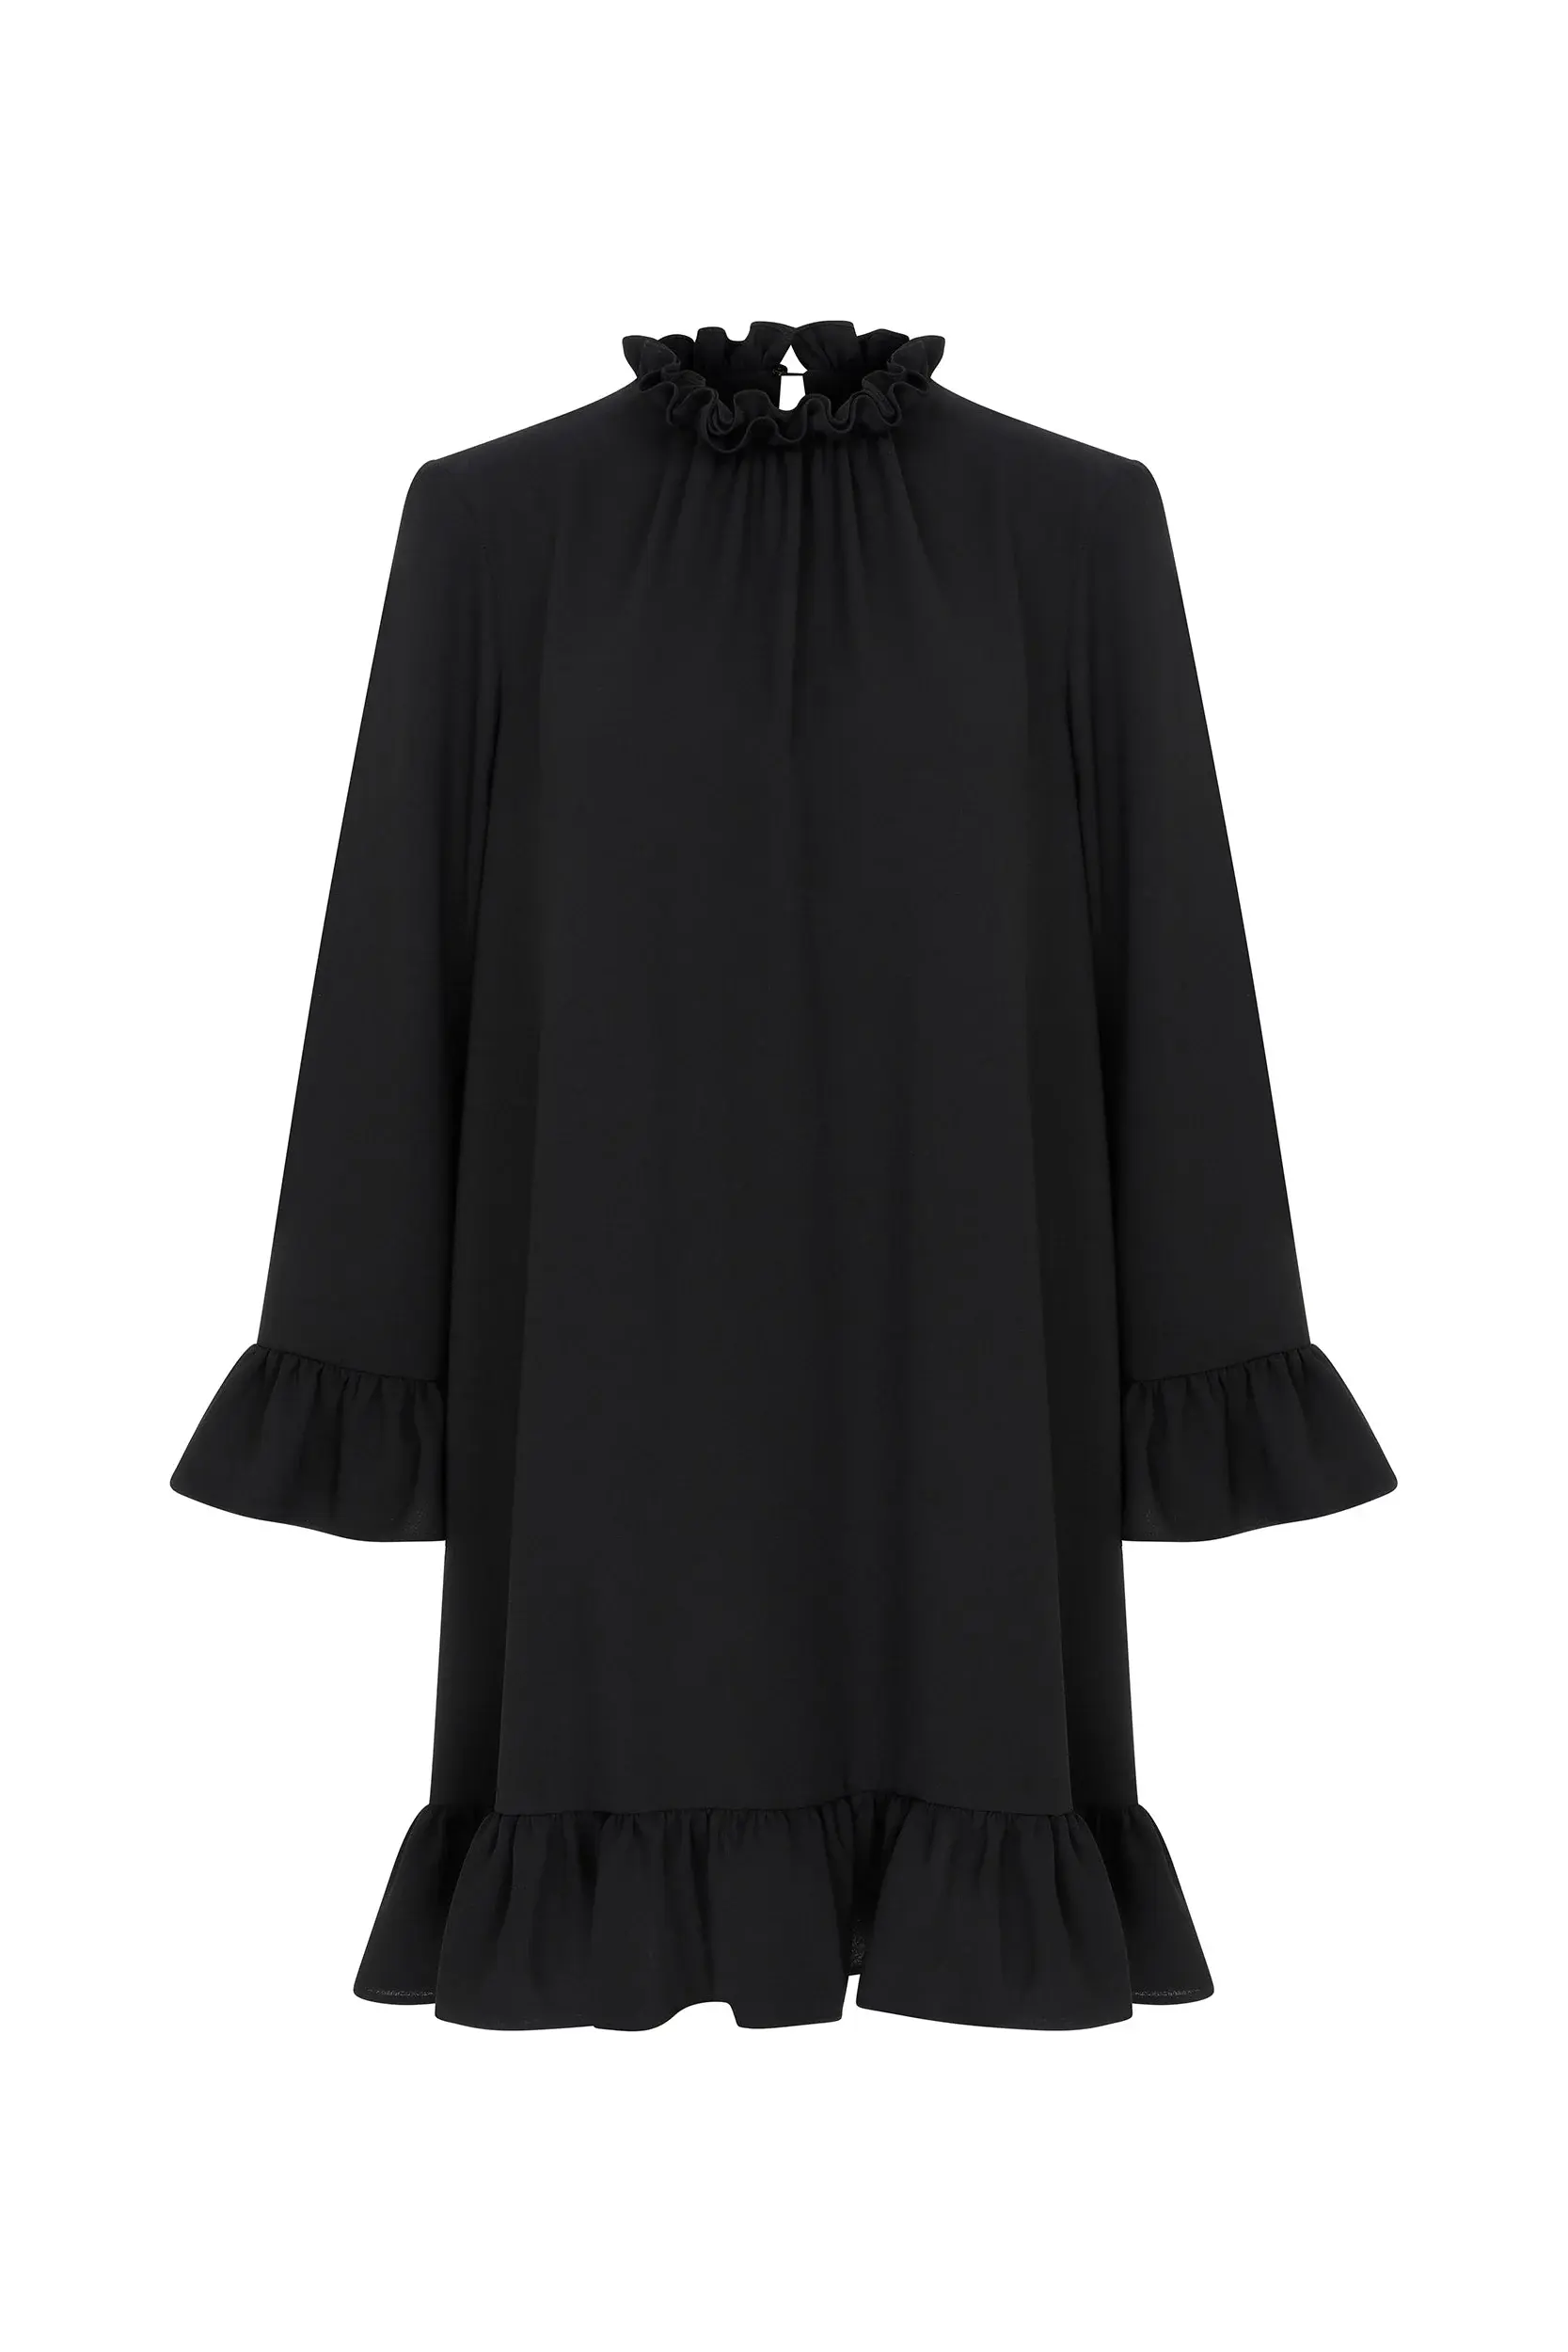 Roman Ruffle Black Mini Dress - 4 / Black. 1